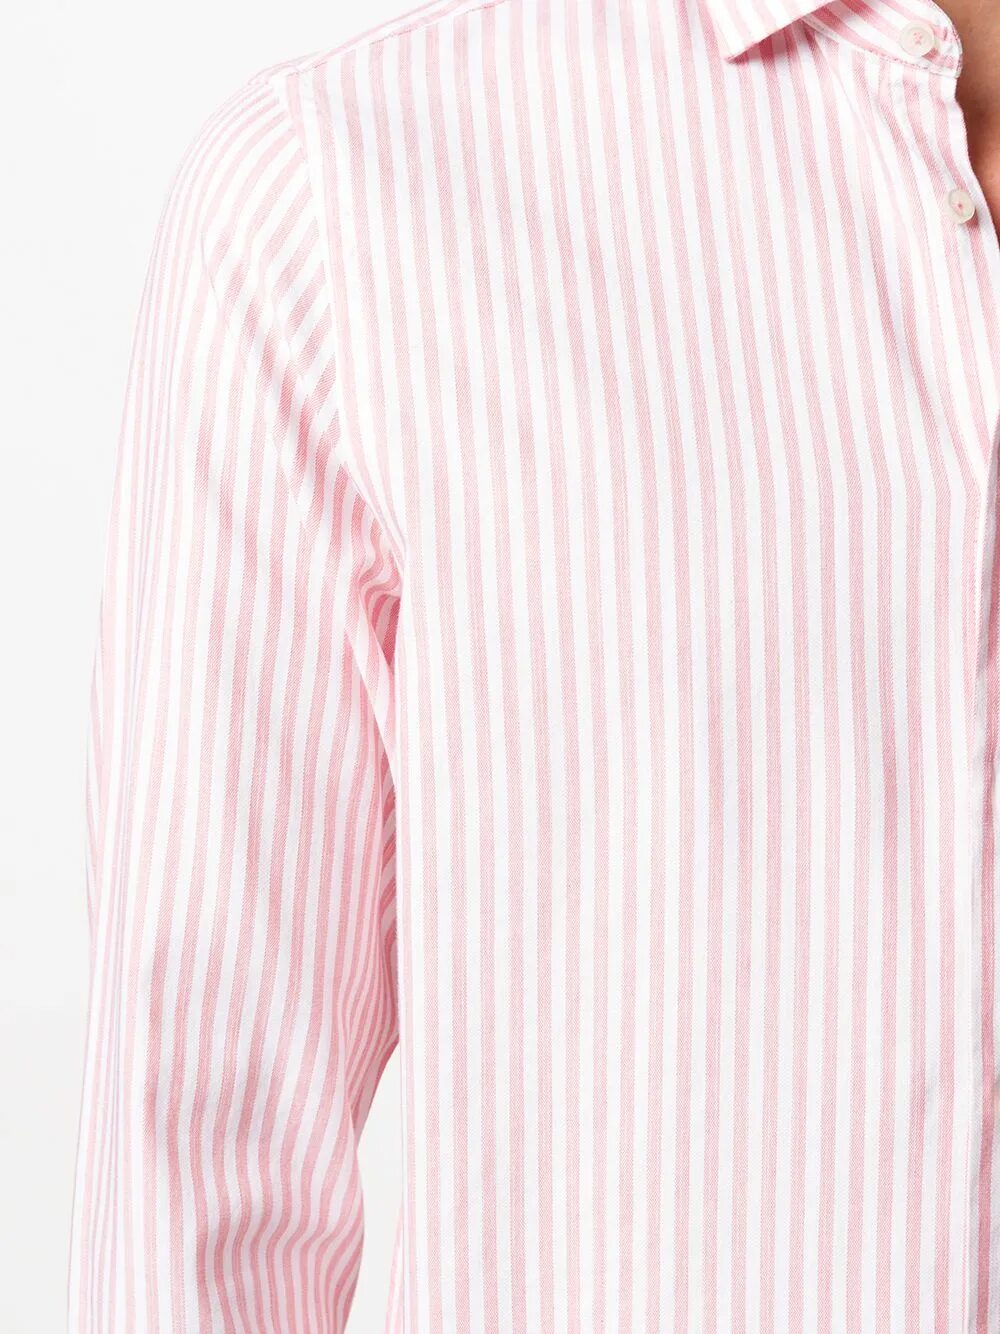 Розовая рубашка в полоску. Рубашка Томми Хилфигер в полоску. Рубашка Томми Хилфигер. Рубашка Томми Хилфигер розовая. Розовая рубашка Tommy Hilfiger.